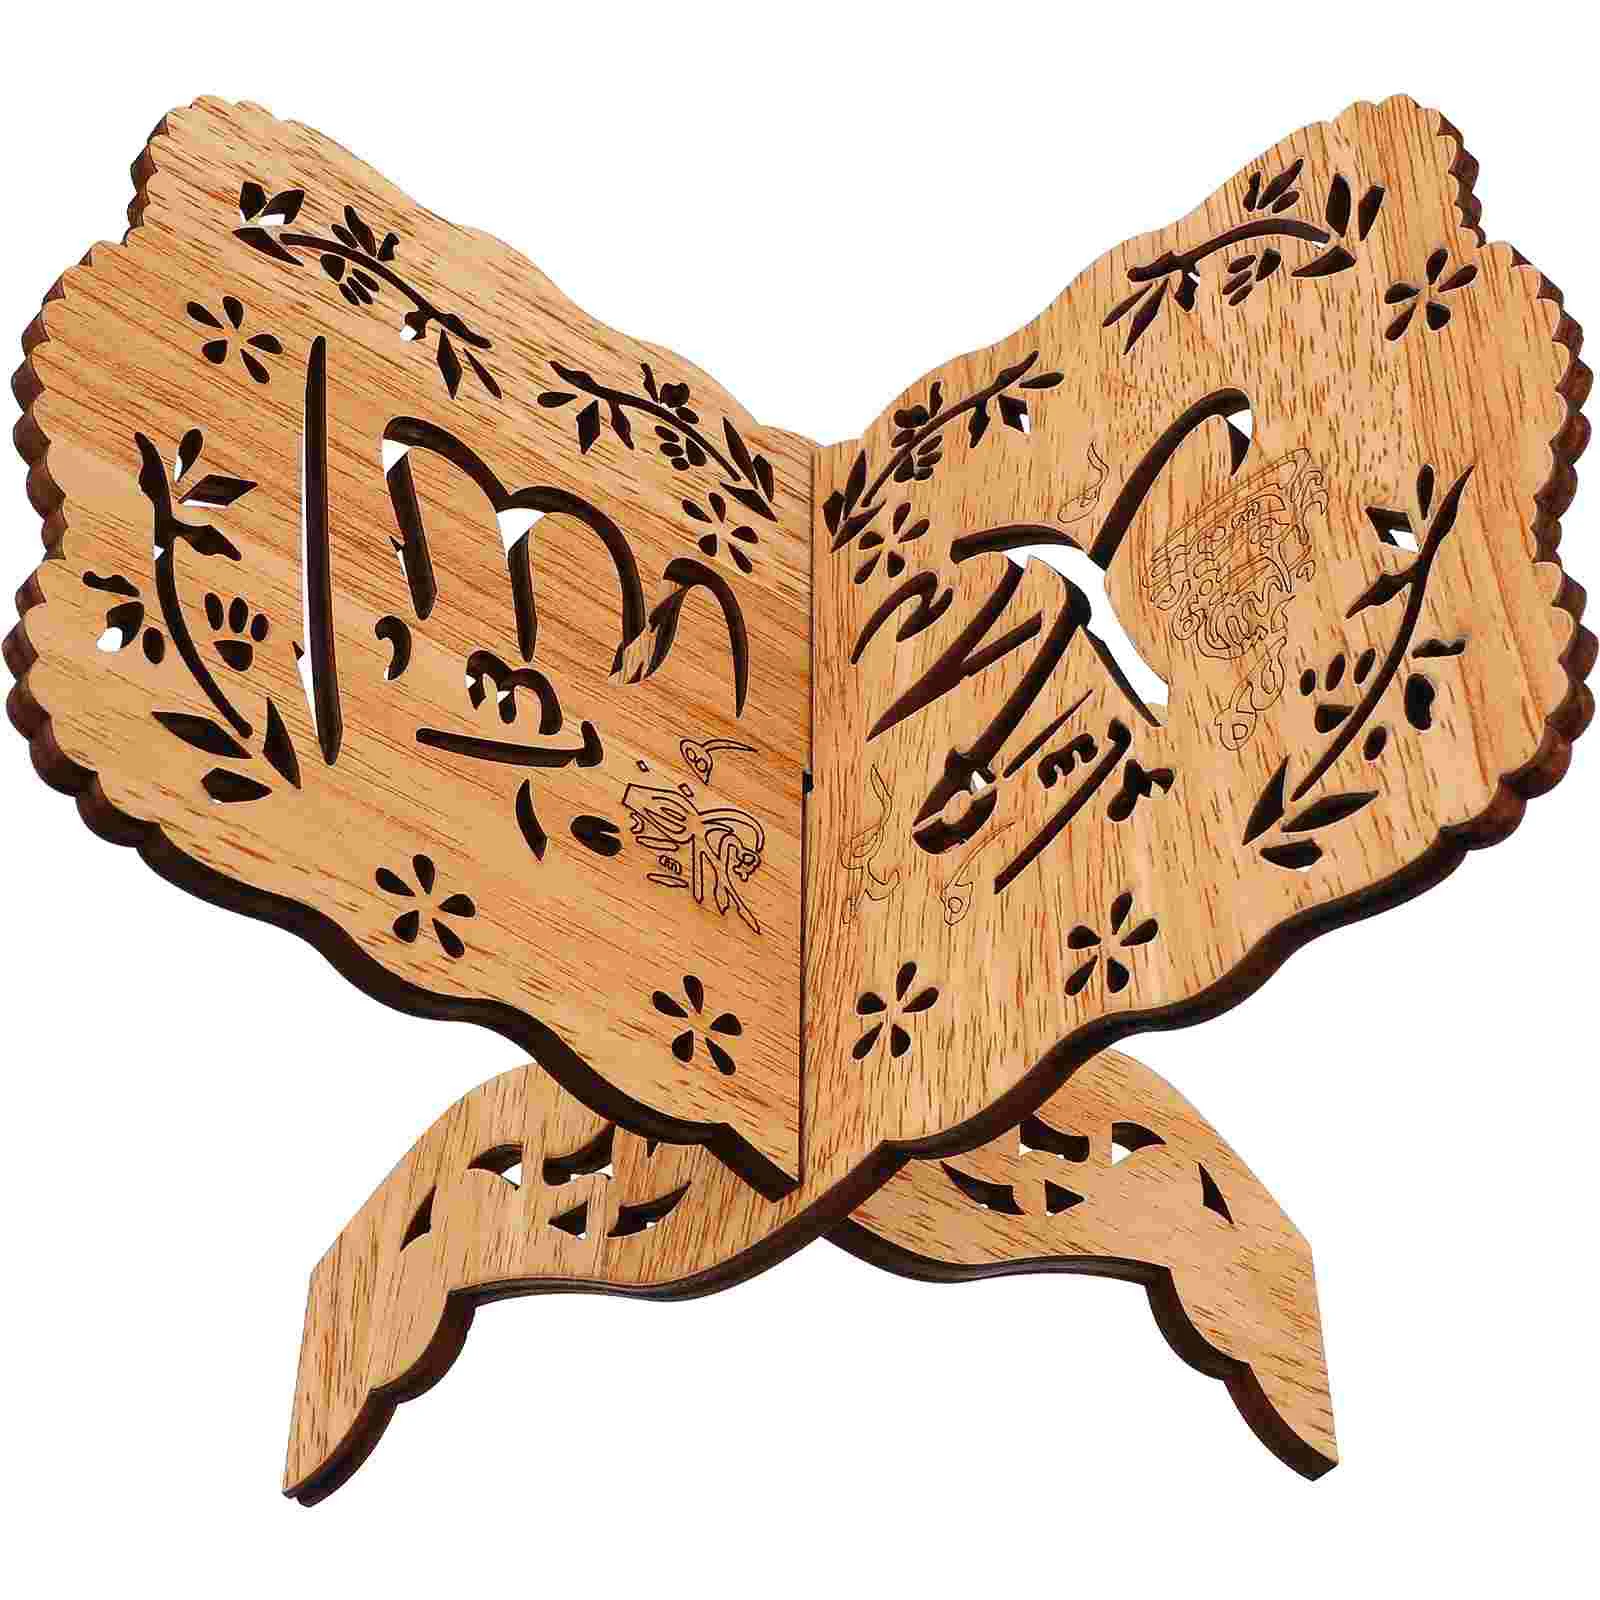 

Деревянный держатель для книг, подставка для Корана, деревянные подставки, складной кронштейн для чтения